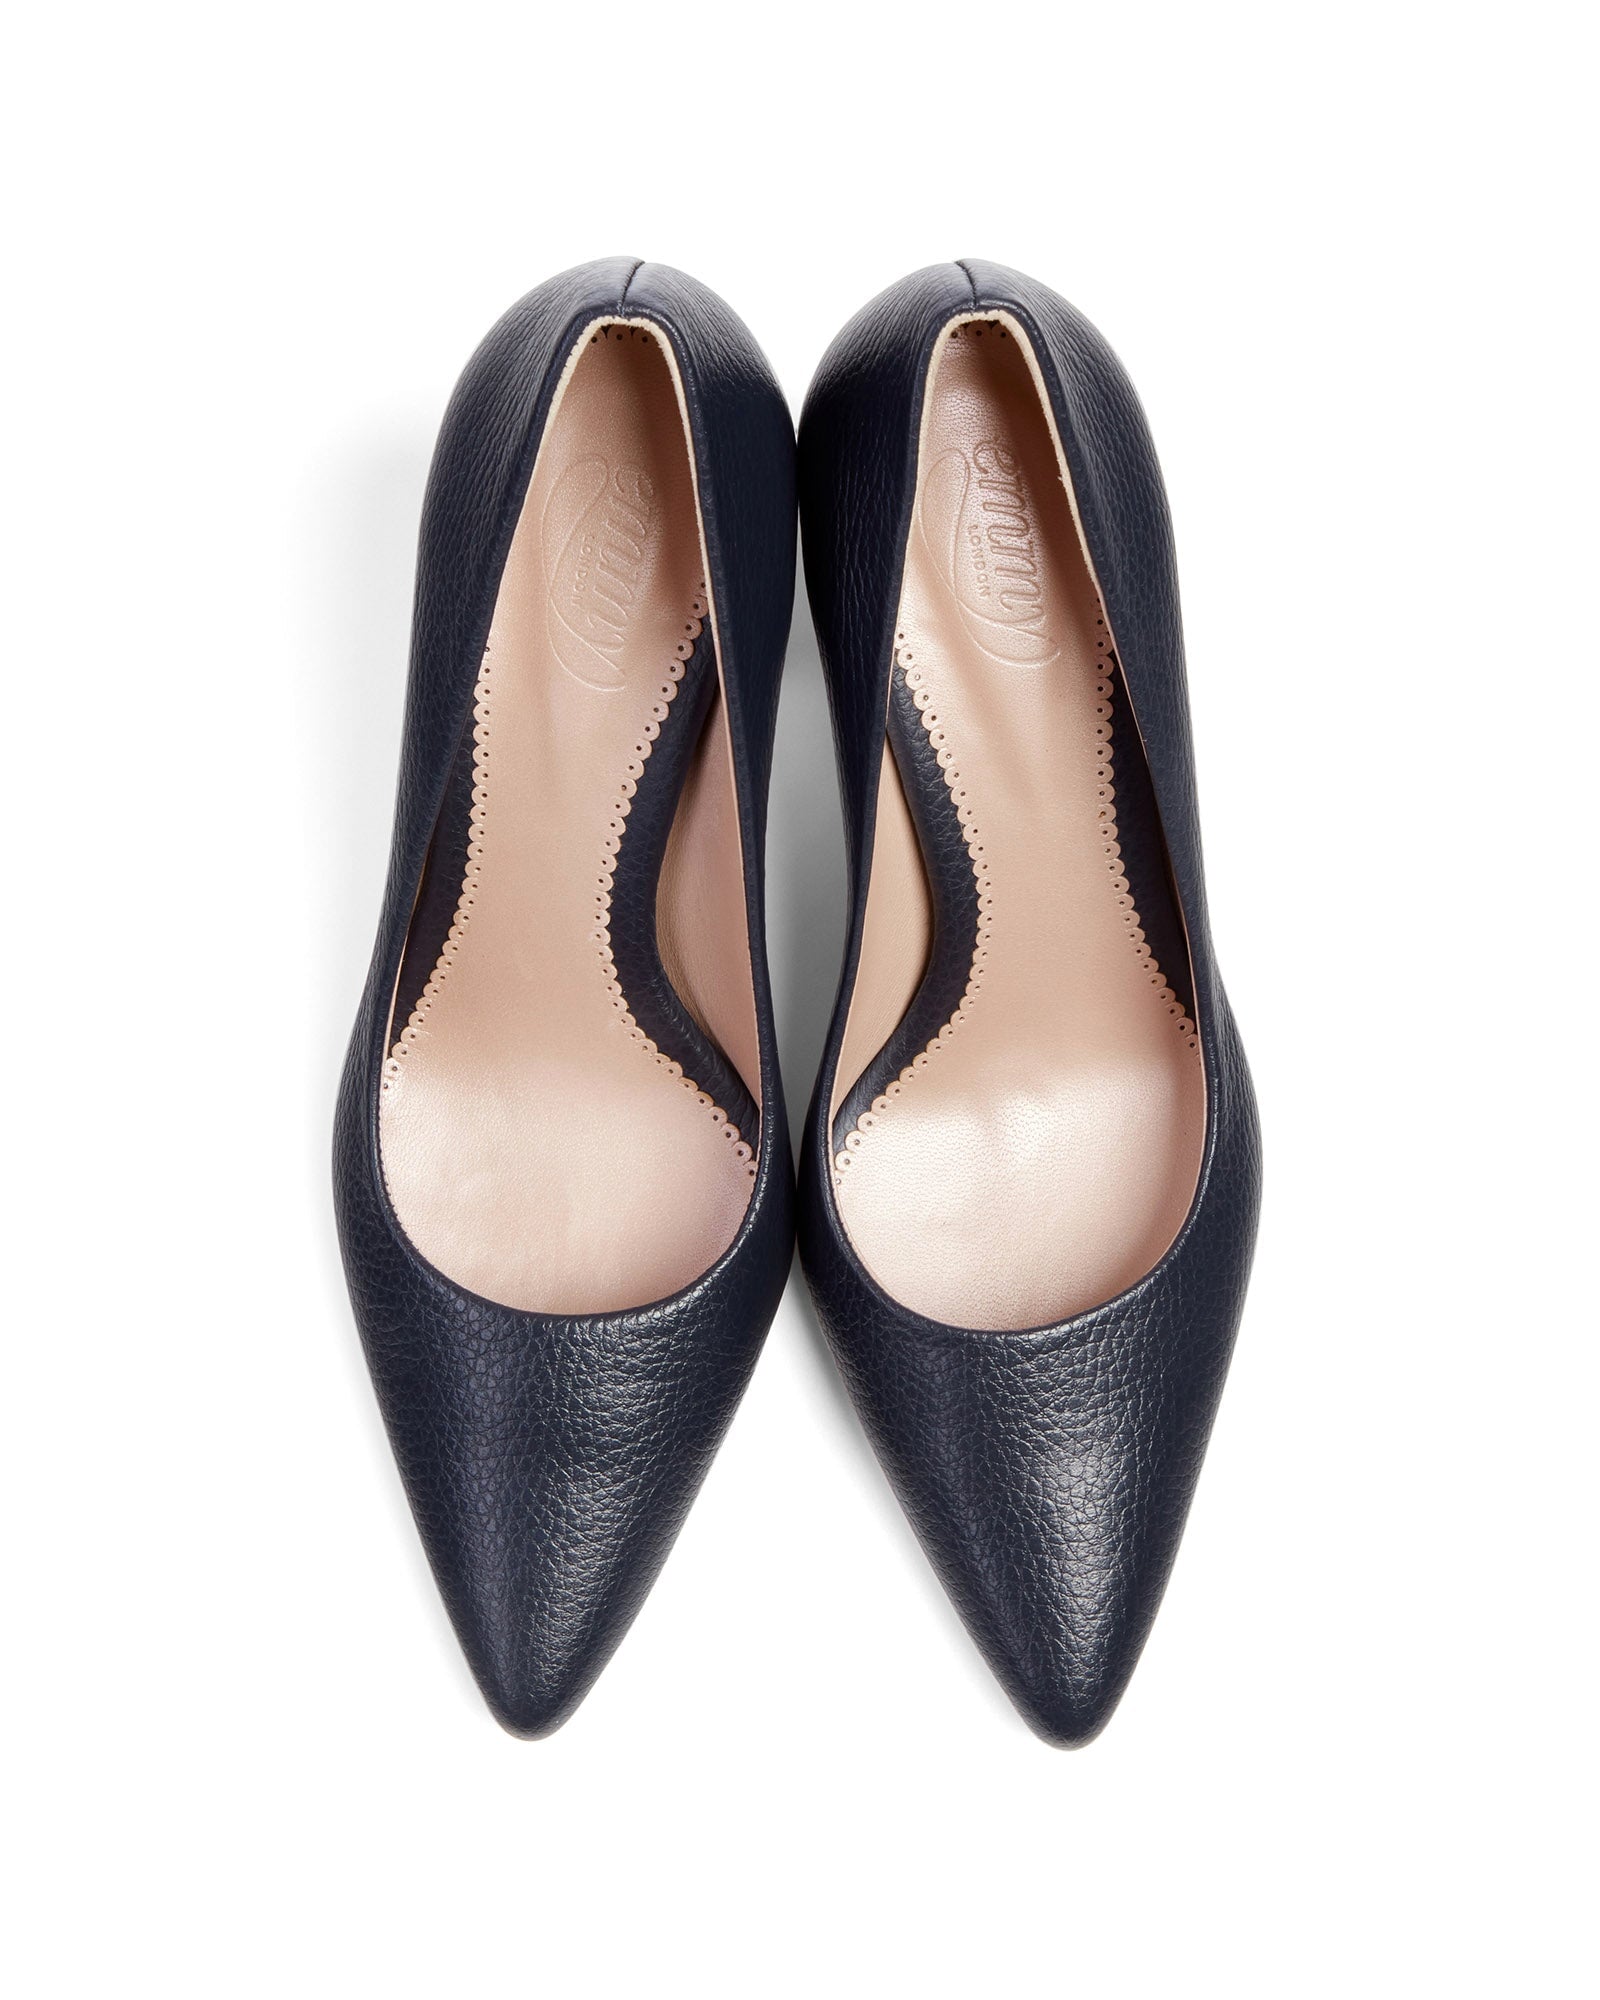 Josie Textured Dark Navy Leather Fashion Shoe Pointed Block Heel Court Shoes  image